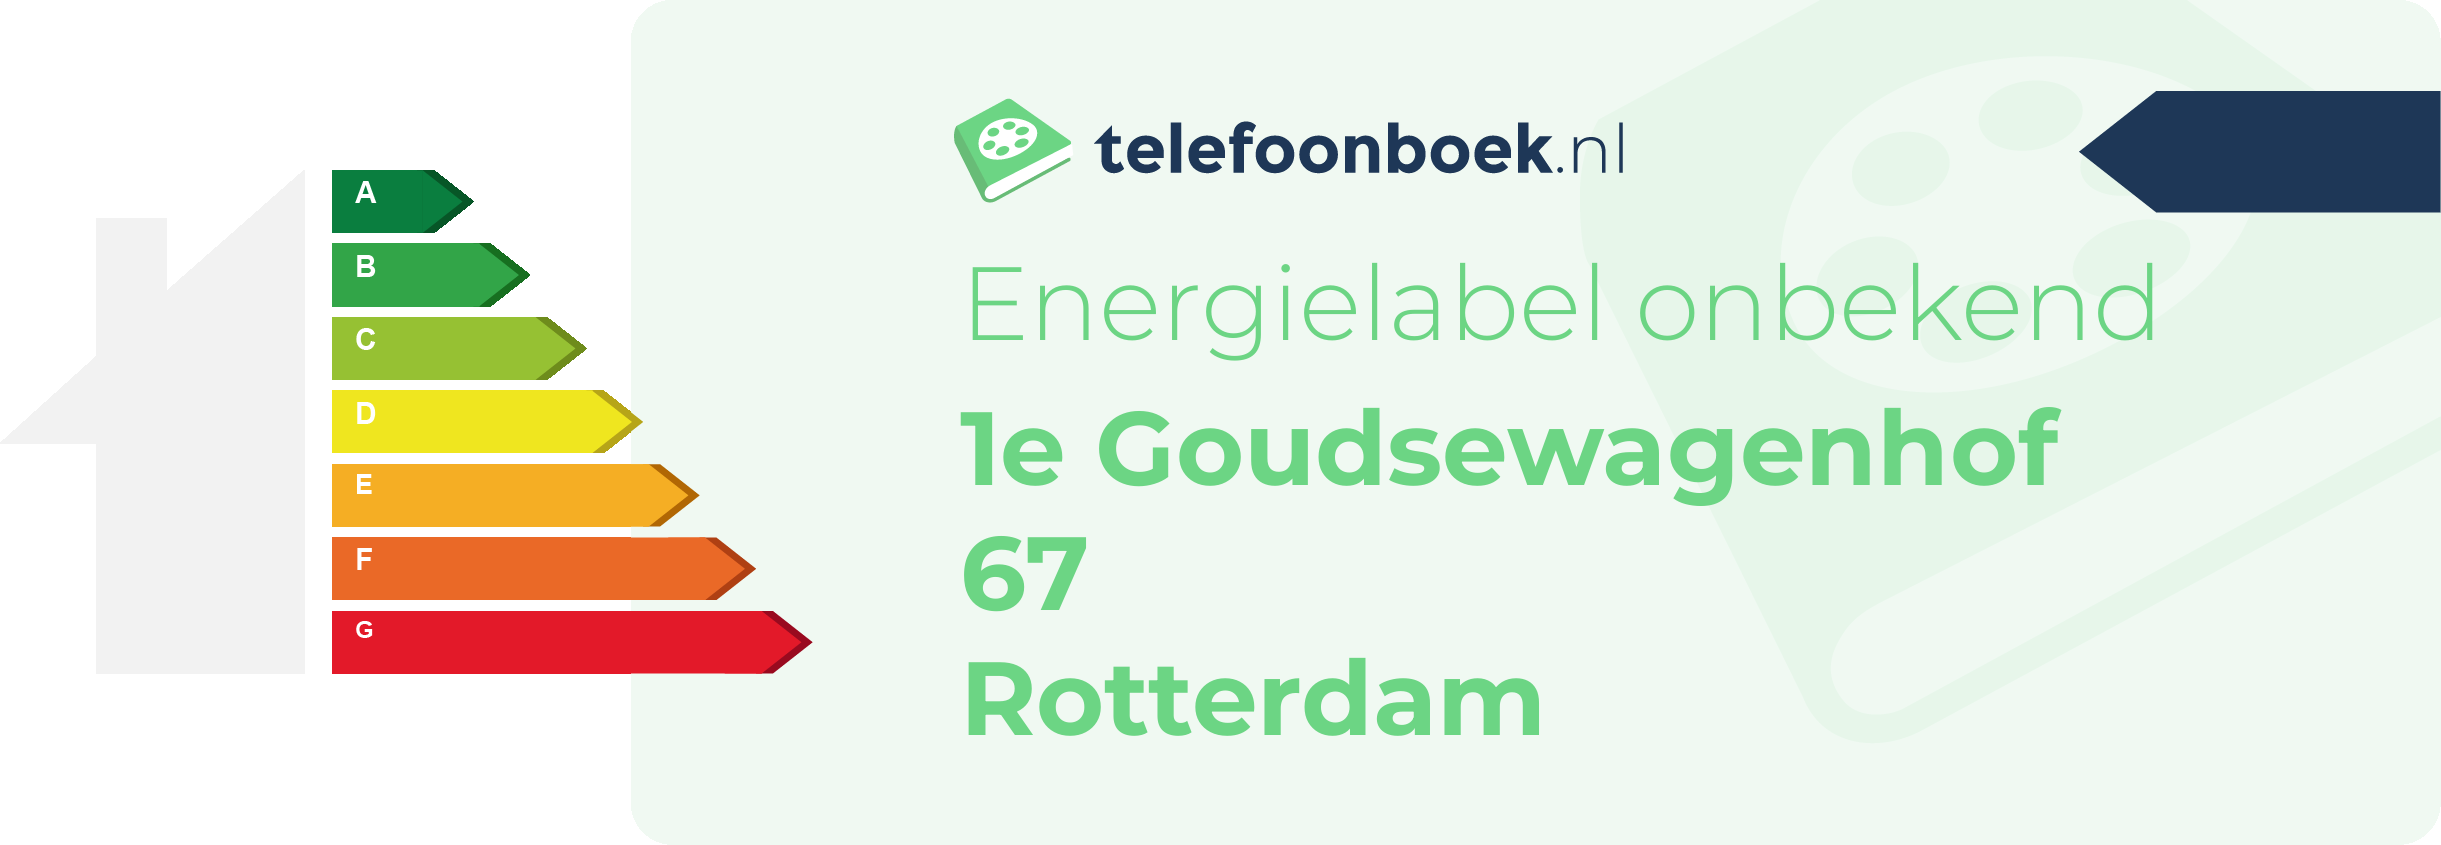 Energielabel 1e Goudsewagenhof 67 Rotterdam